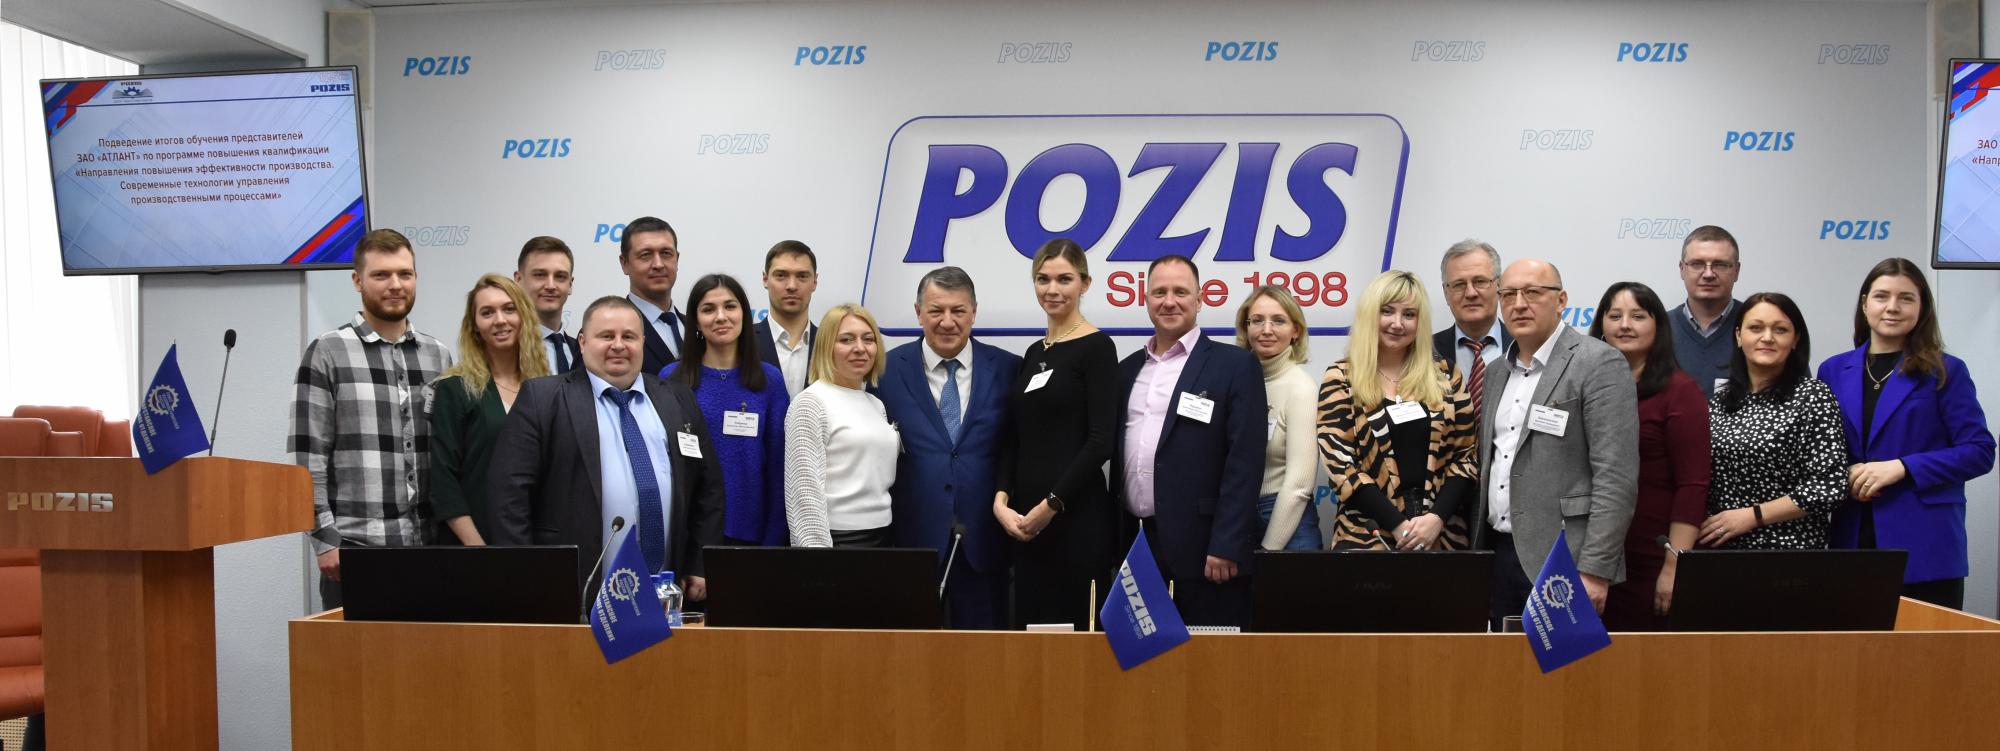 POZIS обучил методам повышения эффективности производства зарубежных партнеров